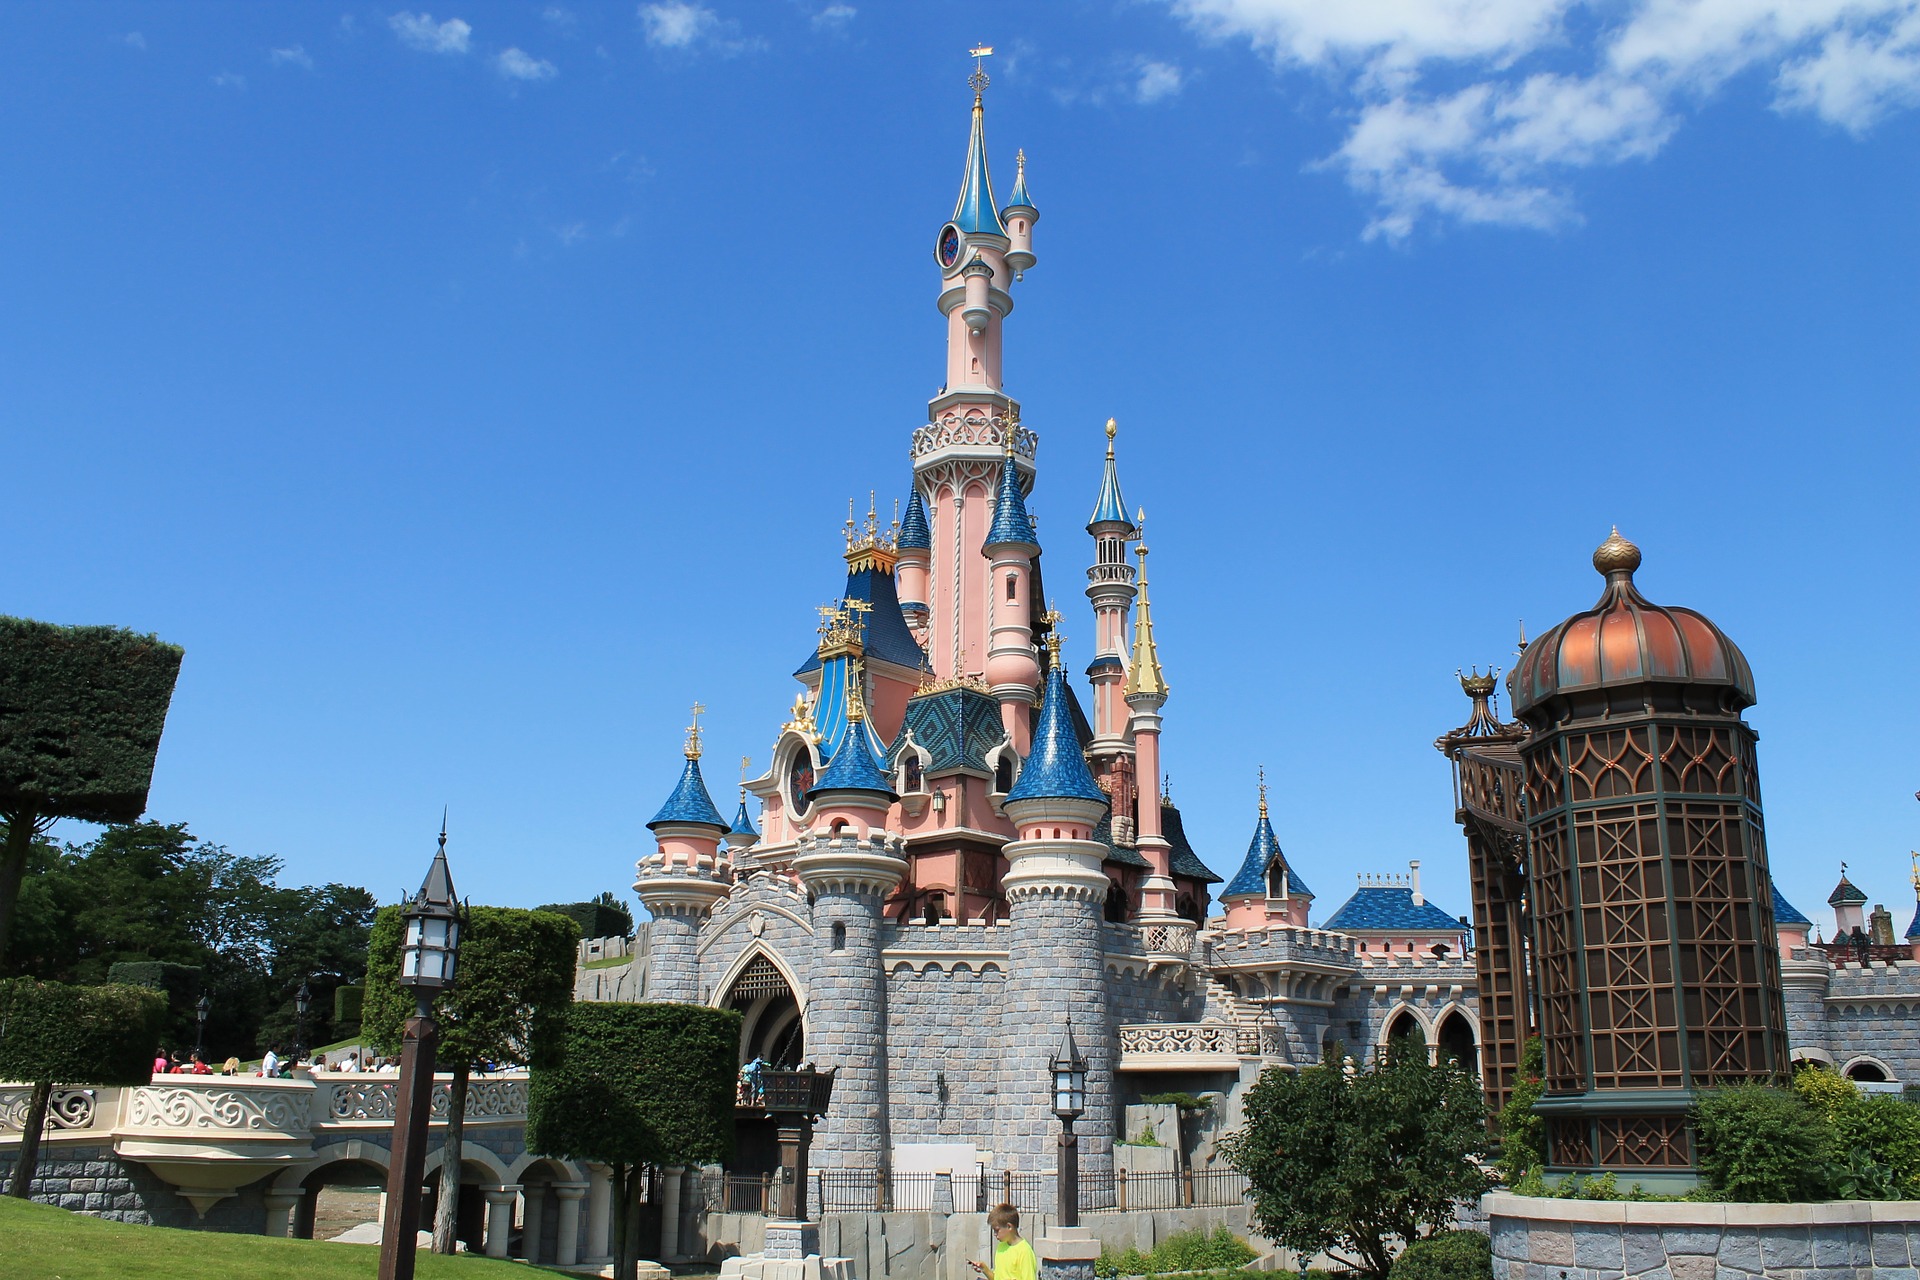 Tag til Disneyland og oplev magien med et hurtigt lån